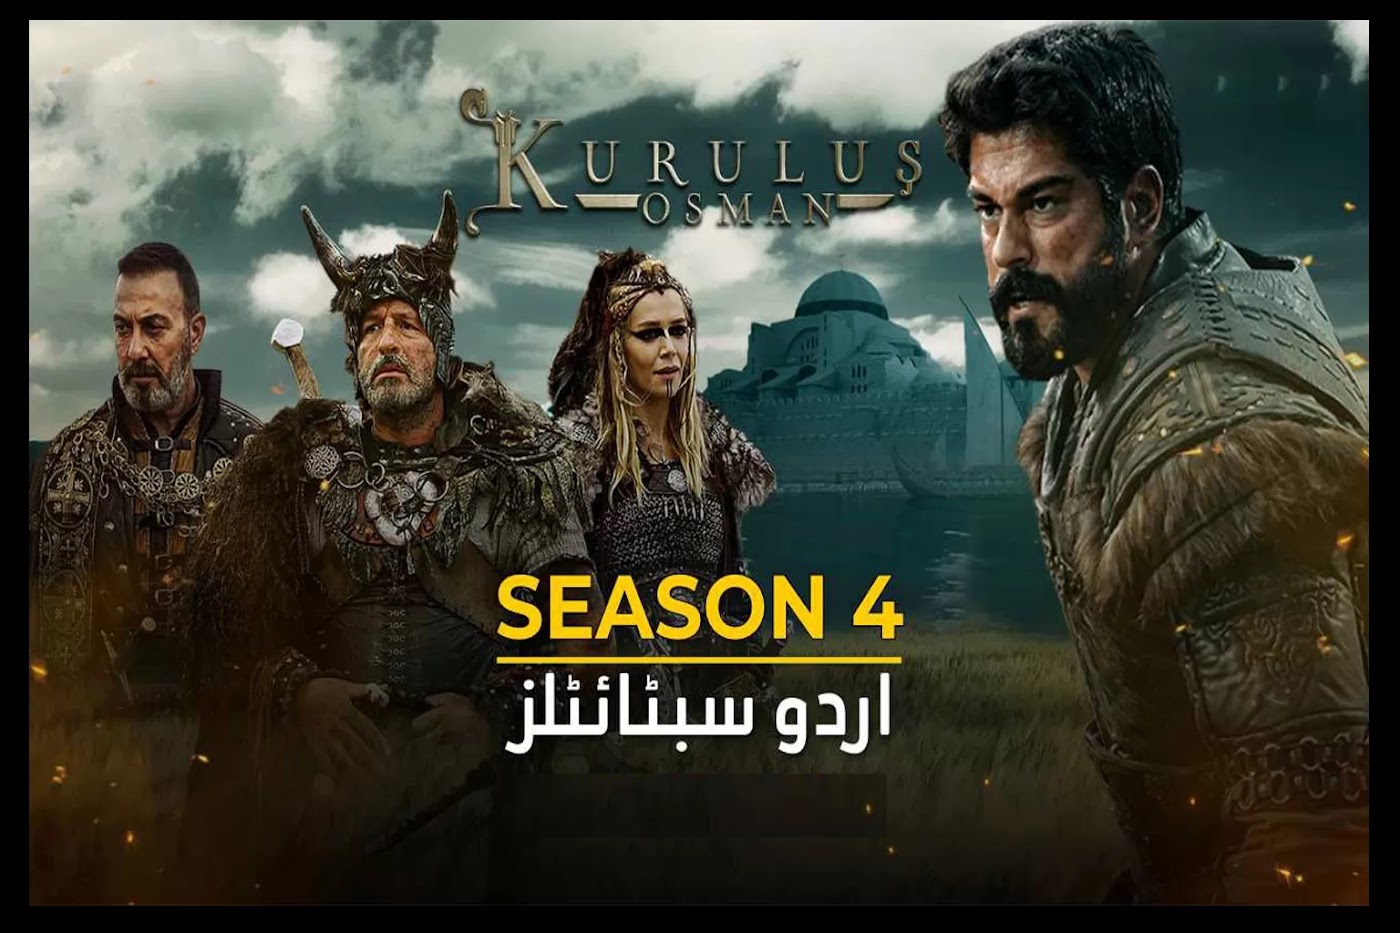 Kurulus osman season 4 episode 114 english subtitles